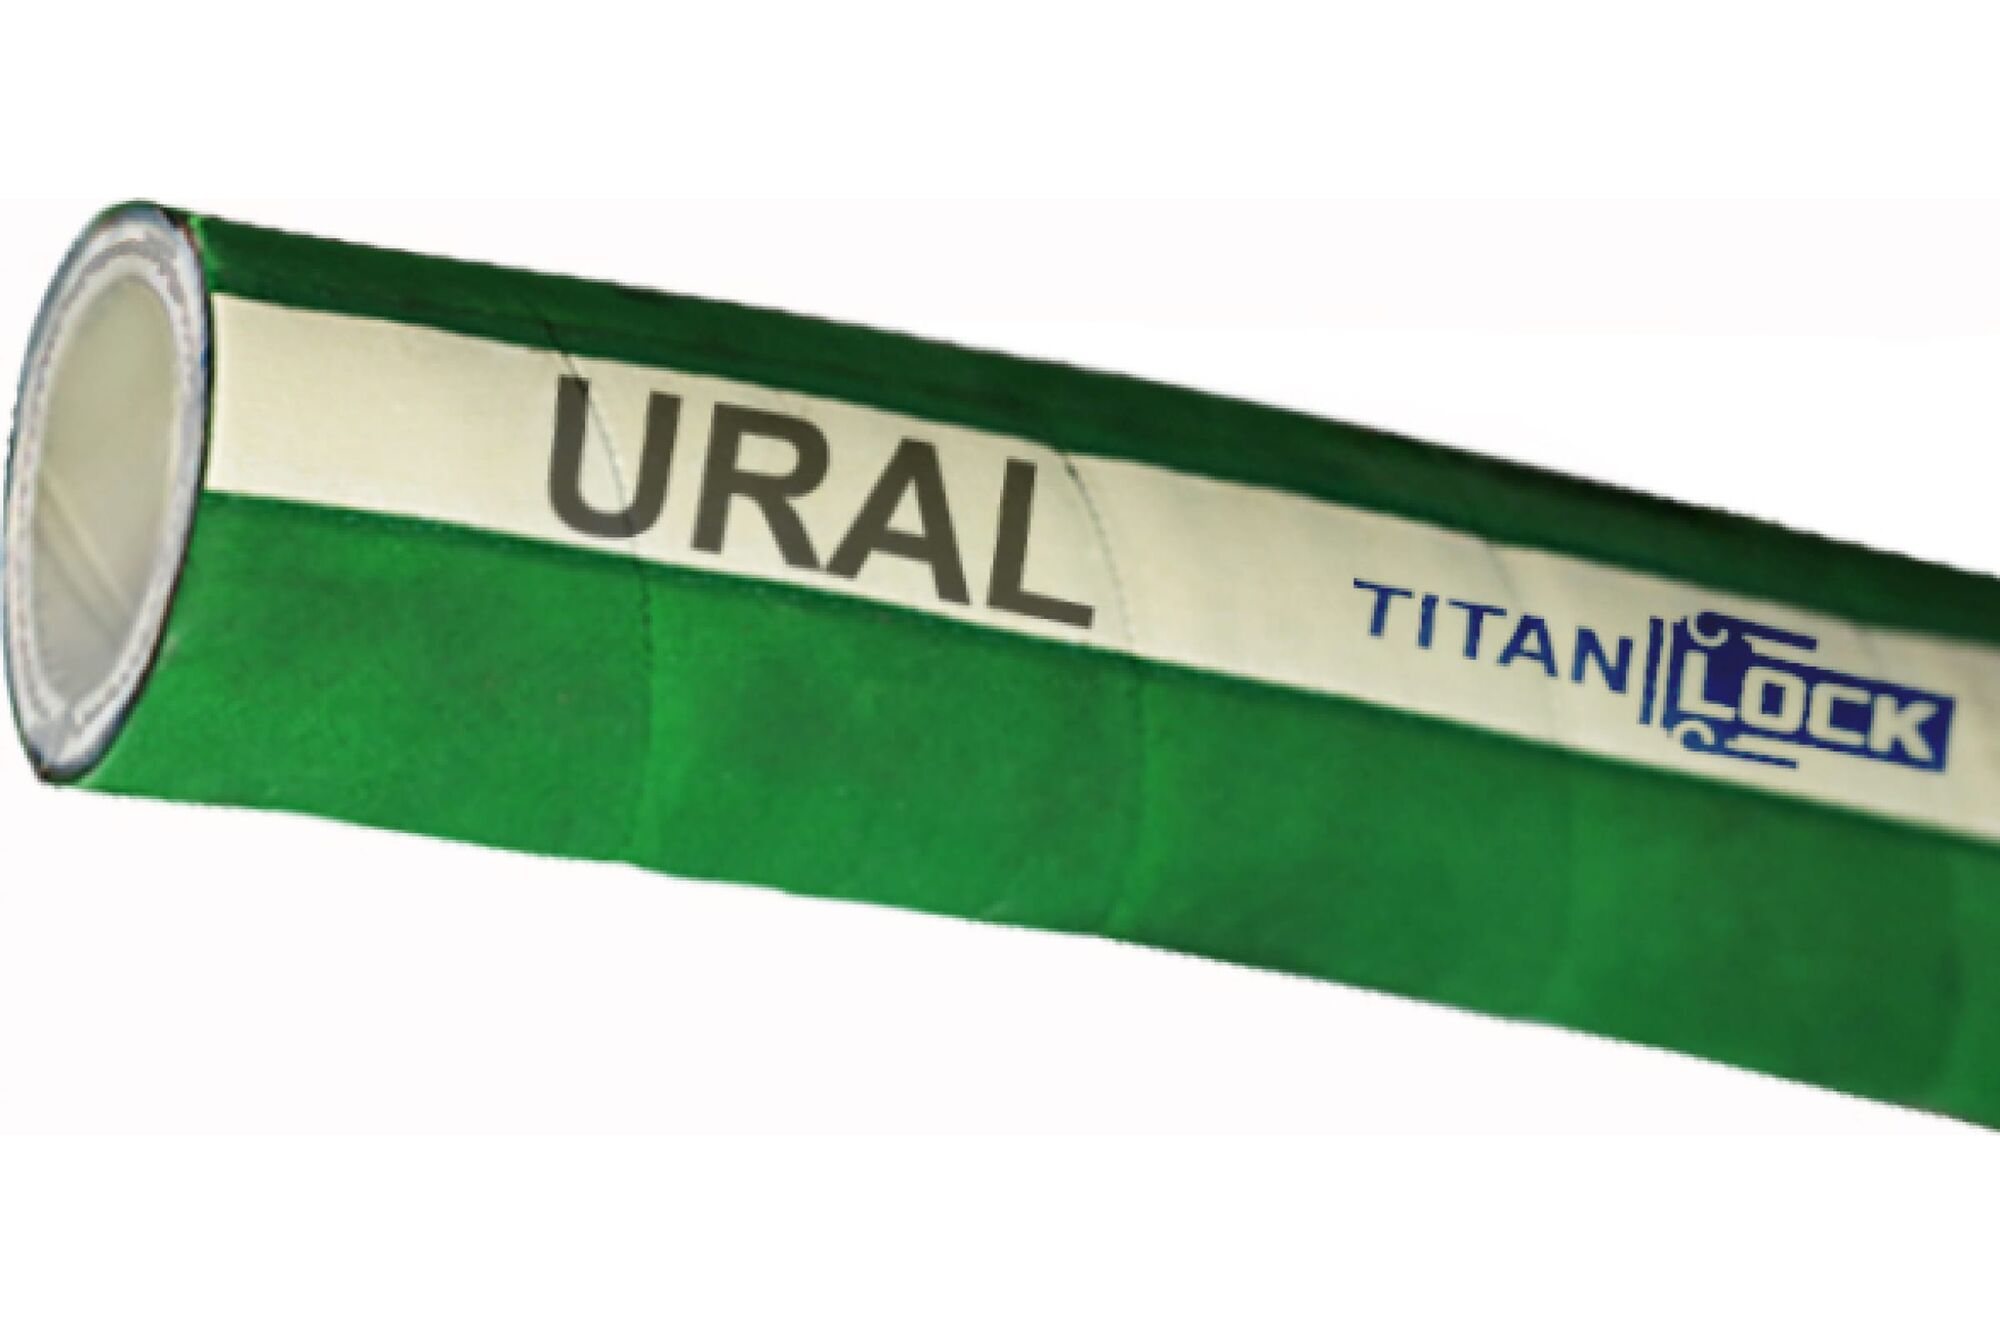 Химостойкий рукав «URAL», внутренний диаметр 100 мм, 16bar, 10 метров, UHMWPE, н/в TITAN LOCK TL100UR